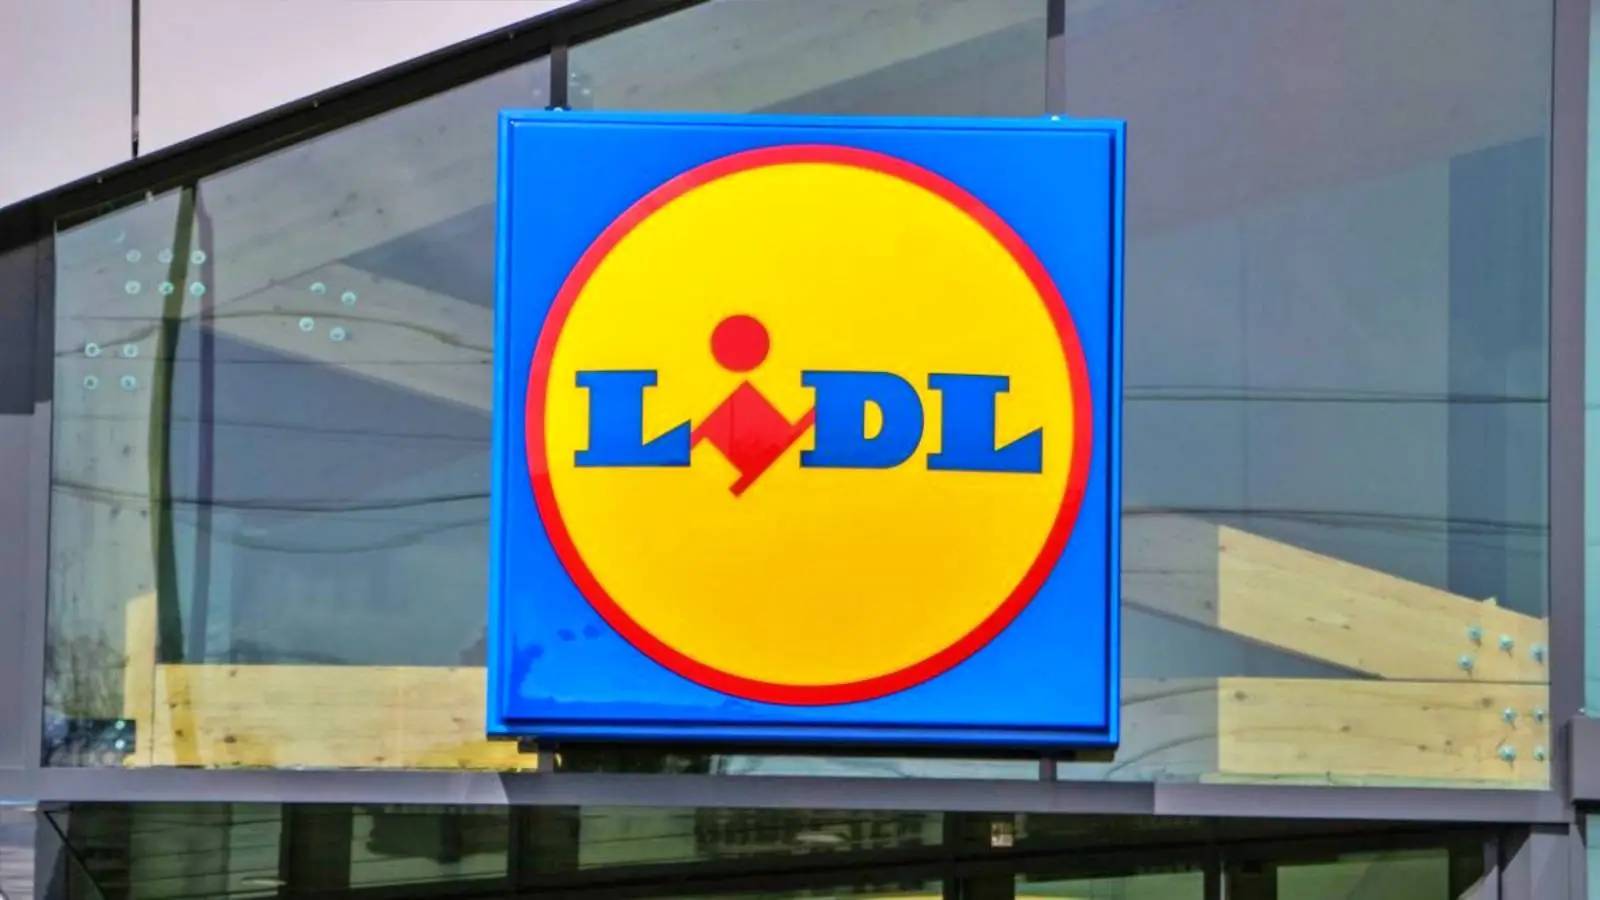 LIDL Rumænien LAST MINUTE Officielle foranstaltninger annonceret rumænske butikker